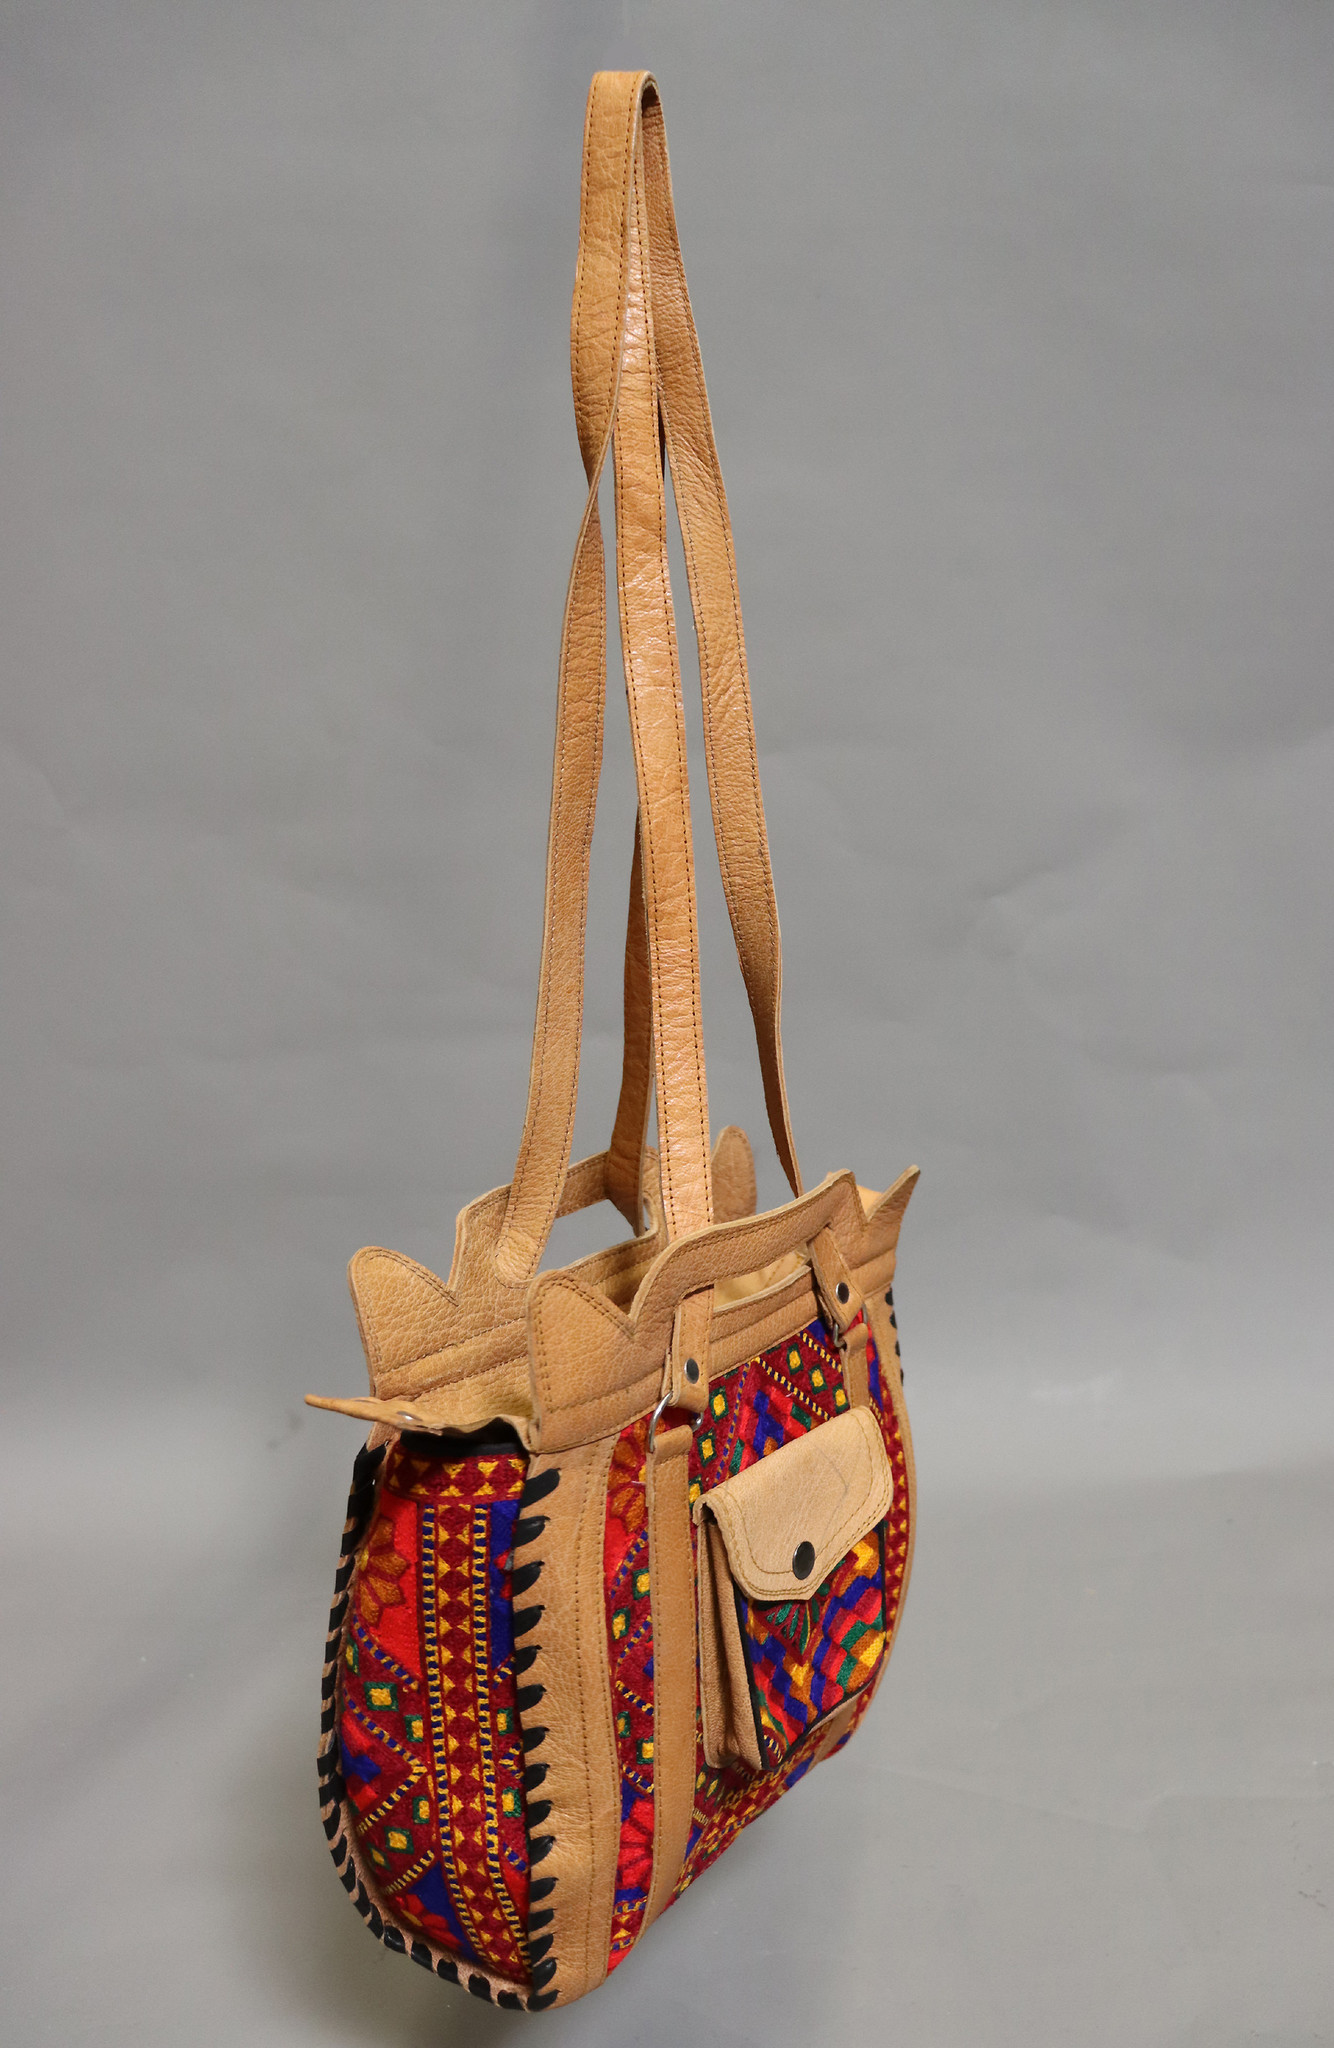 seltener Handgefertigte Leder und Suzani Frauen schultertasche Tasche damen umhängetasche handtasche shopper aus Kabul Afghanistan Nr:23-4